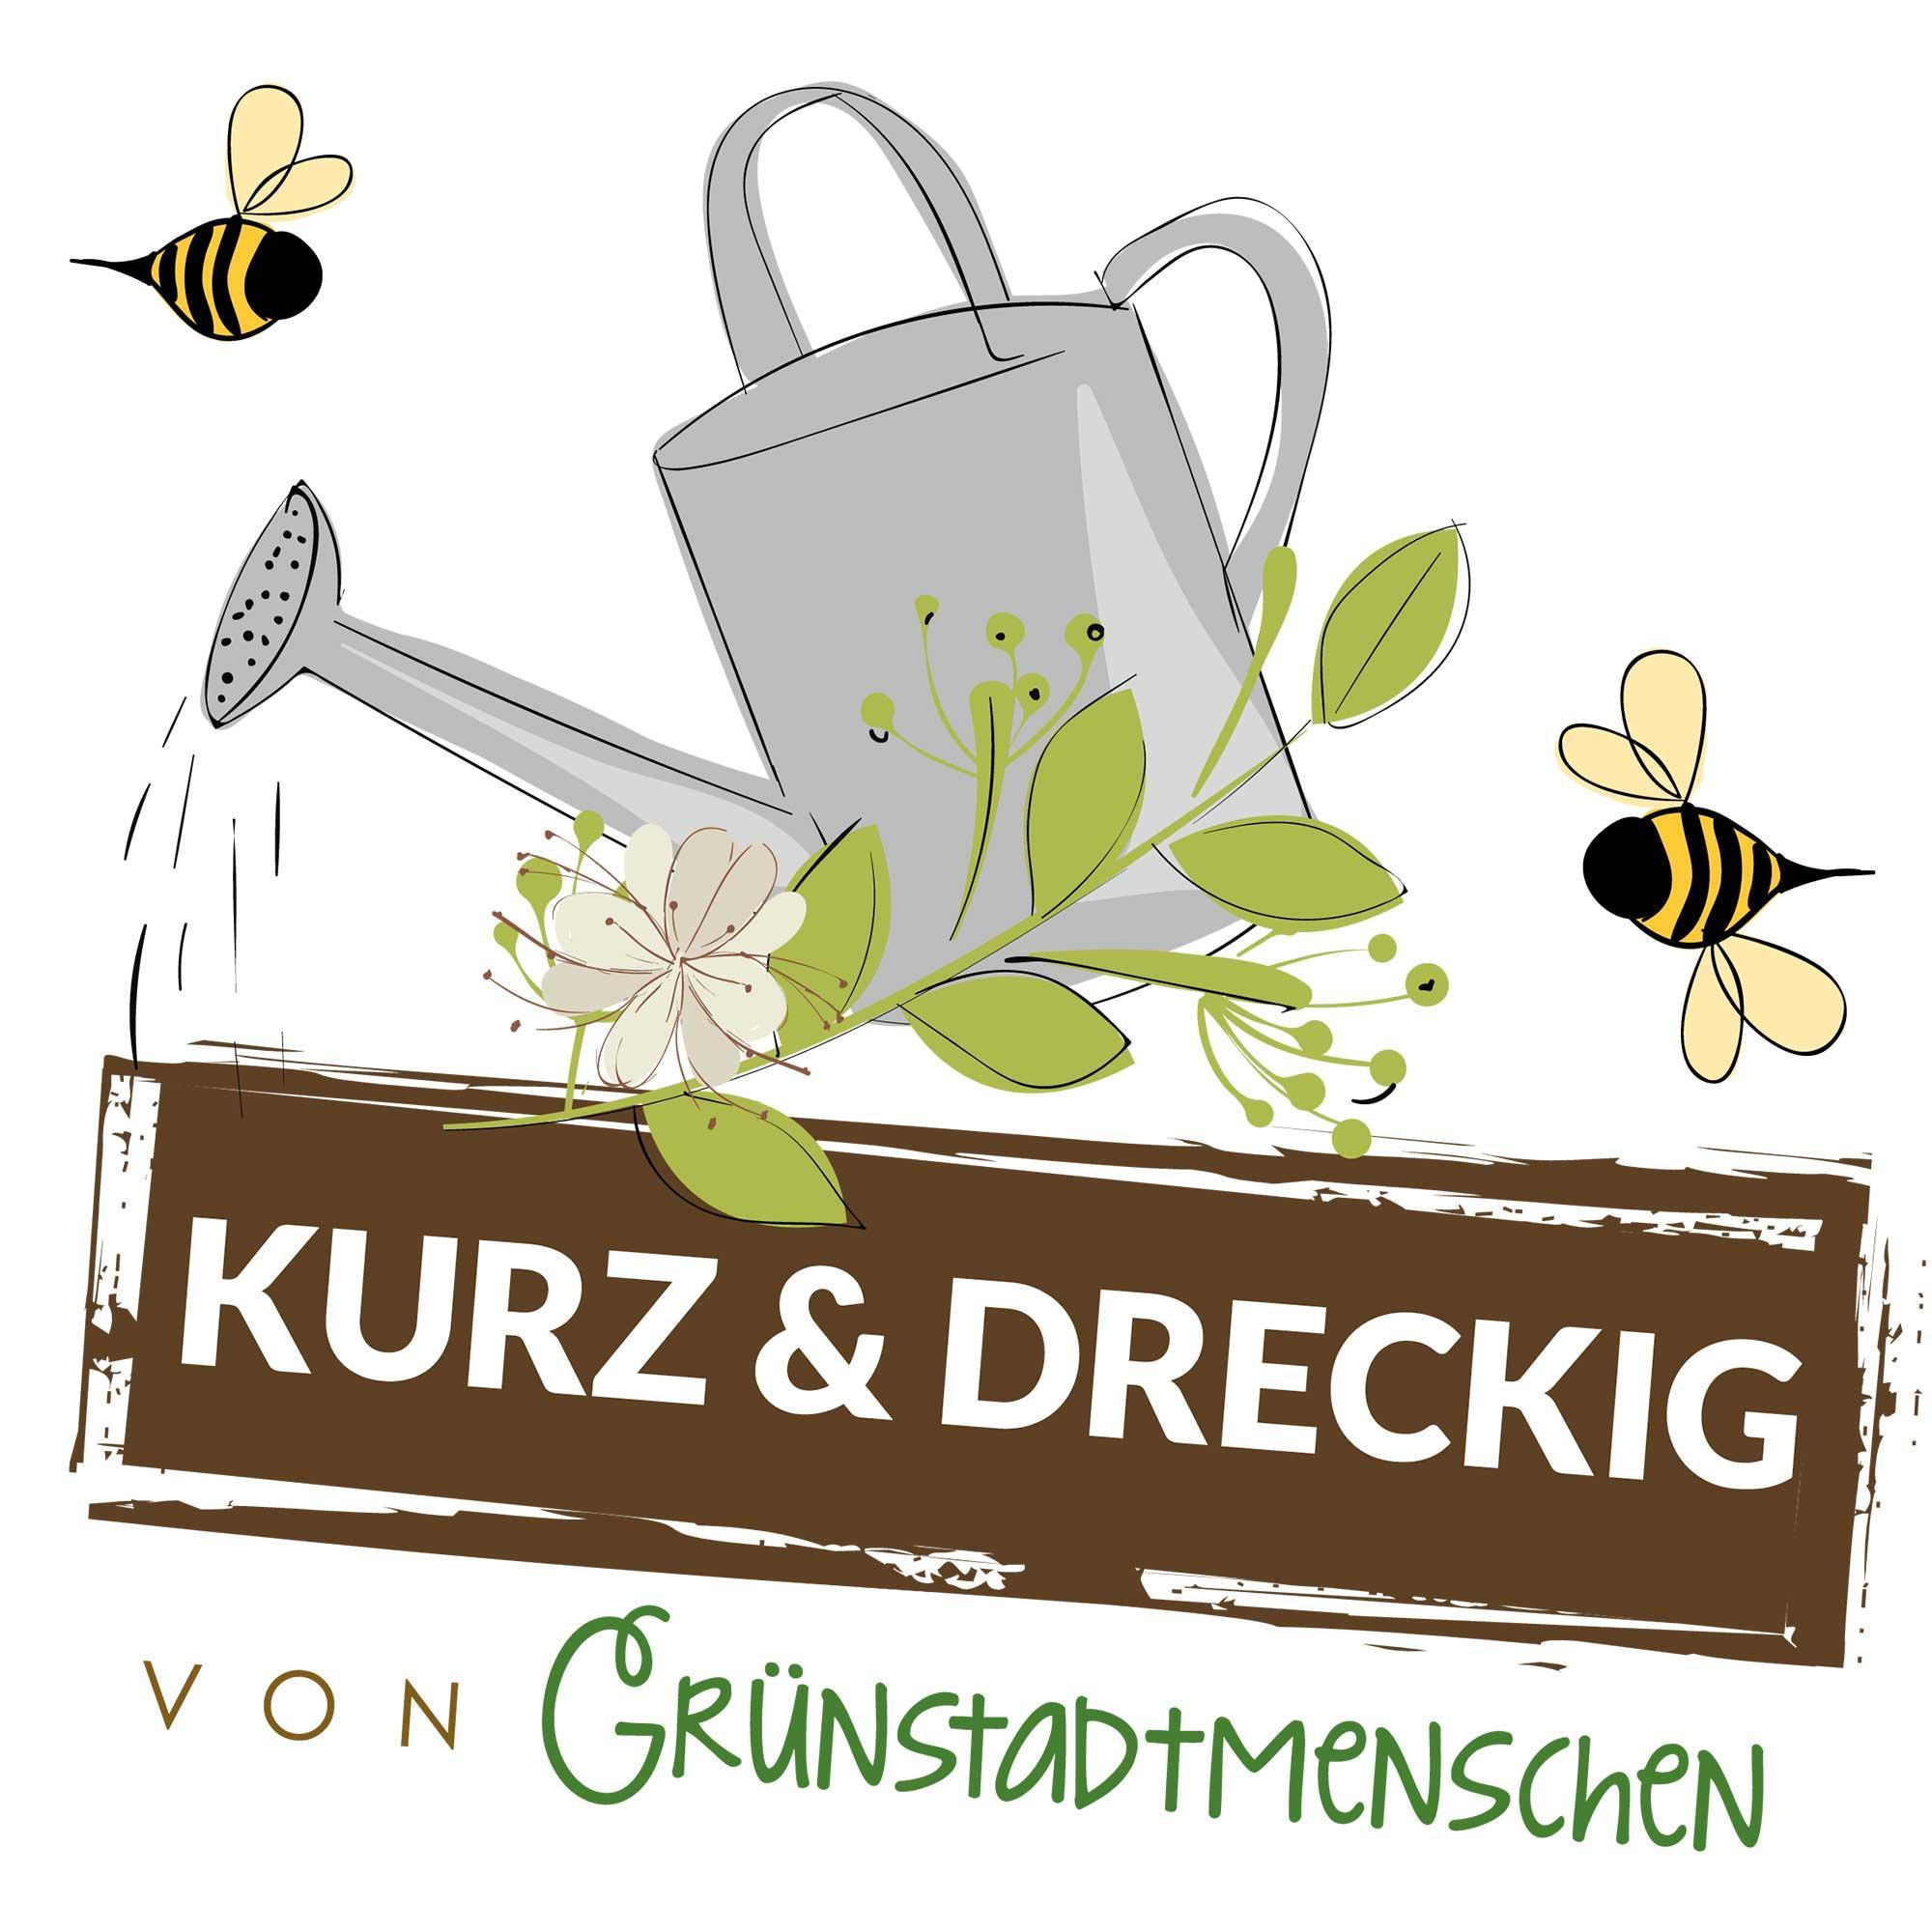 #103 Kurz & dreckig: Karinas Gartentipps für den November